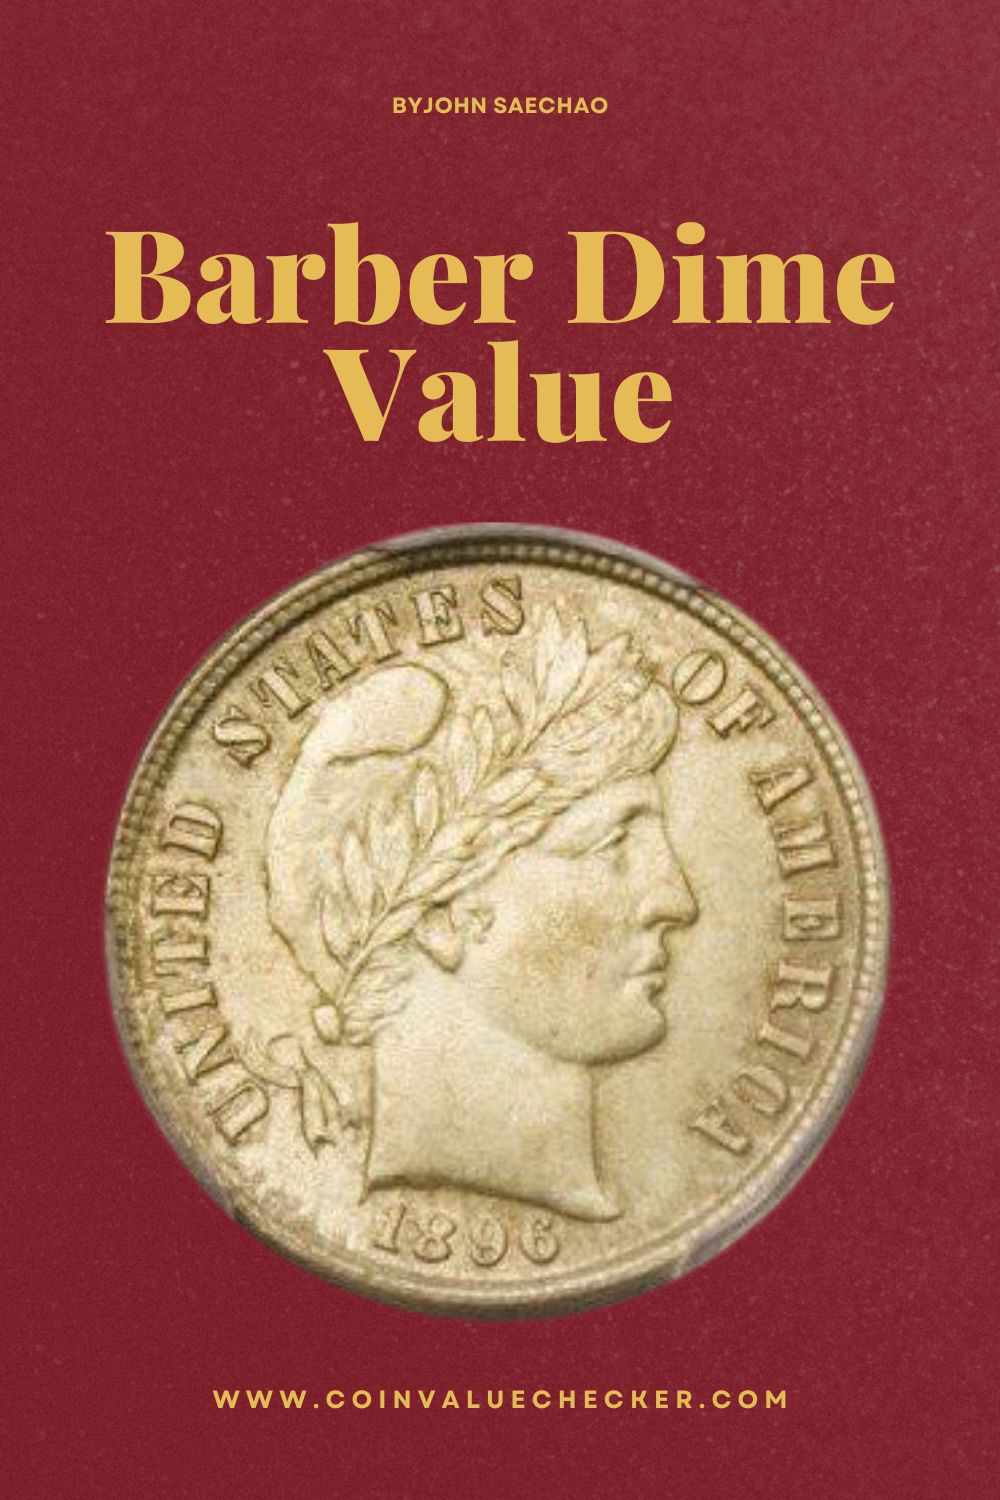 Barber Dime Value